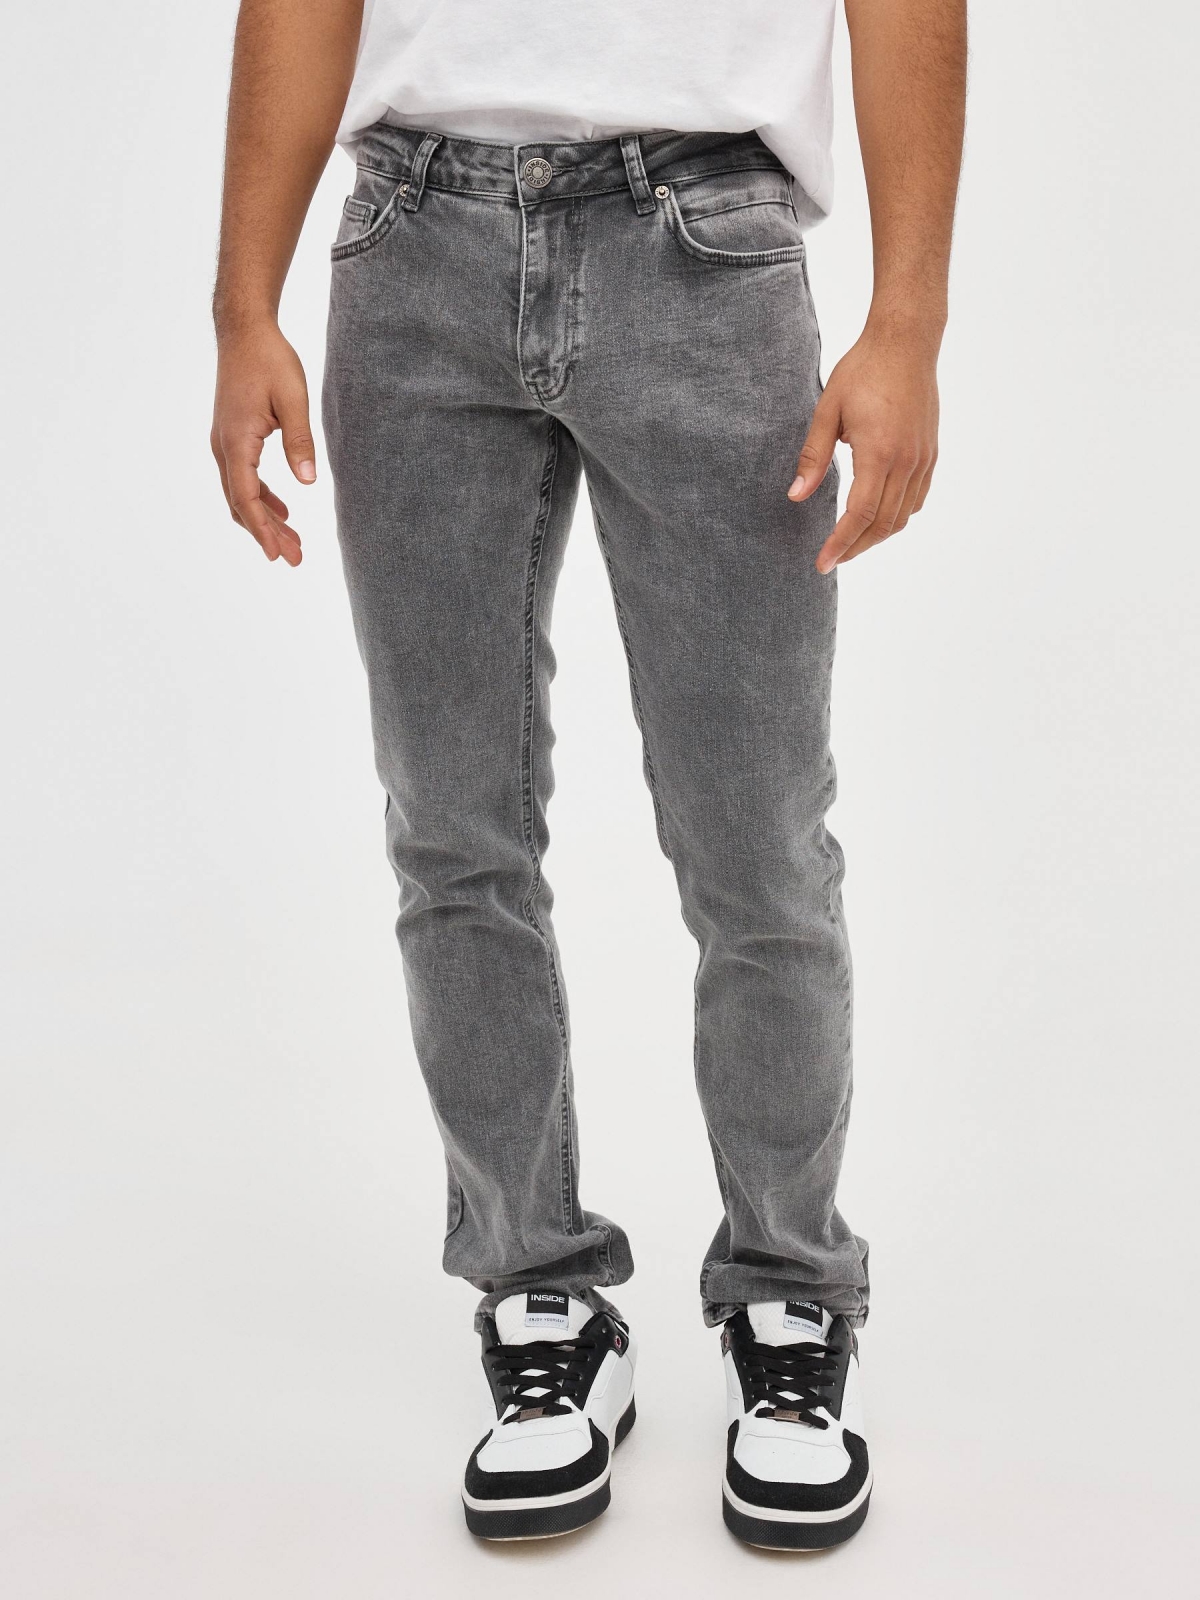 Jeans Regular grises gris oscuro vista media frontal